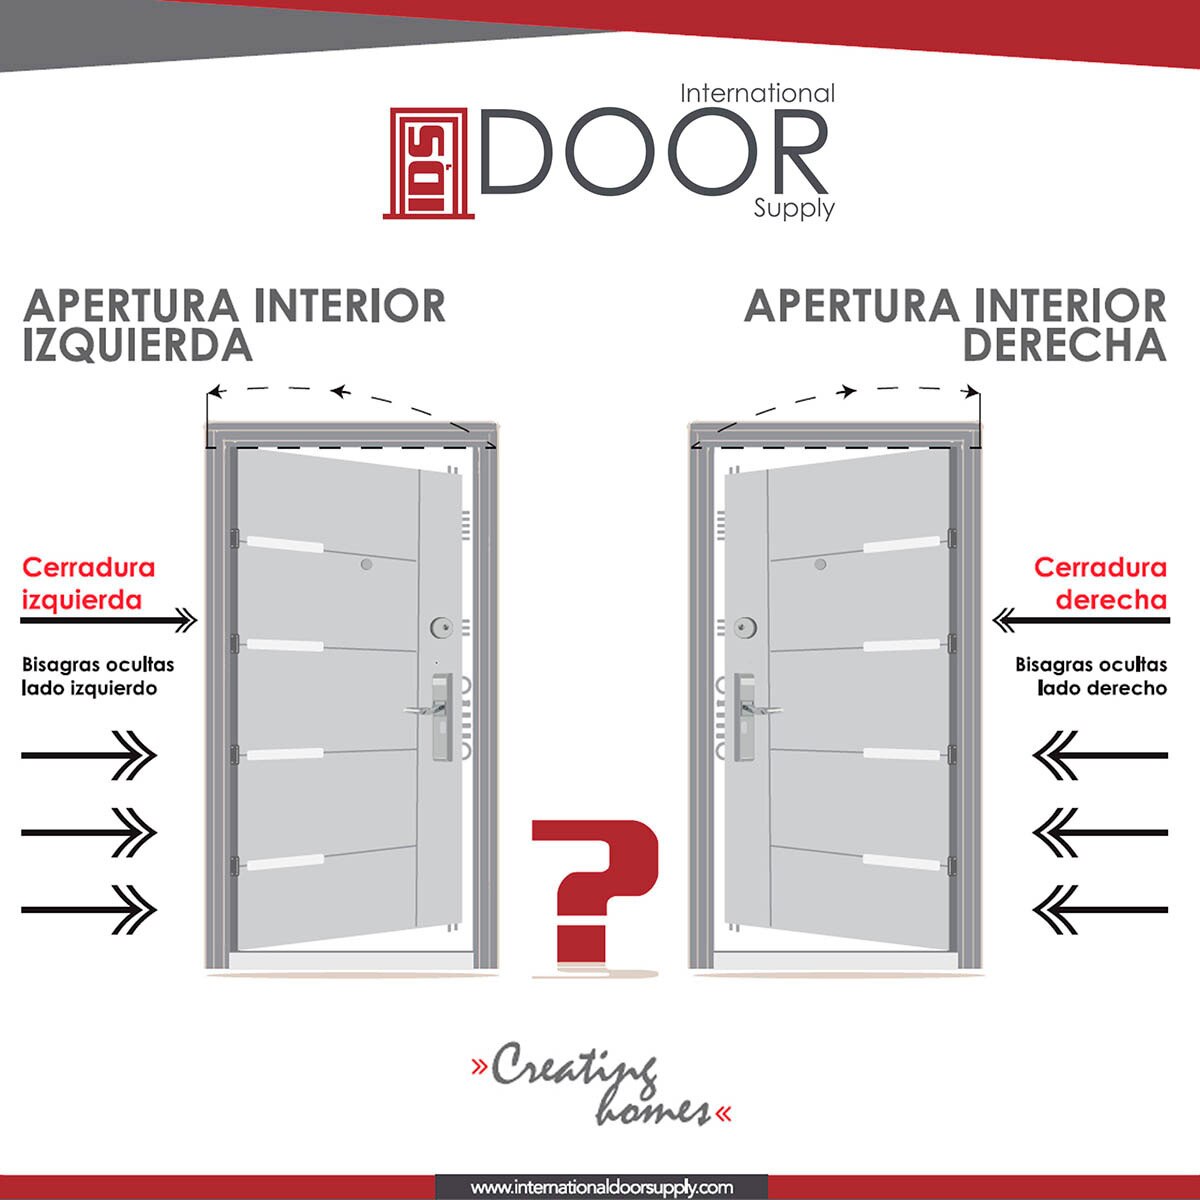 International Door Supply, Puerta de Alta Seguridad Santa Fe con Fijo Derecha